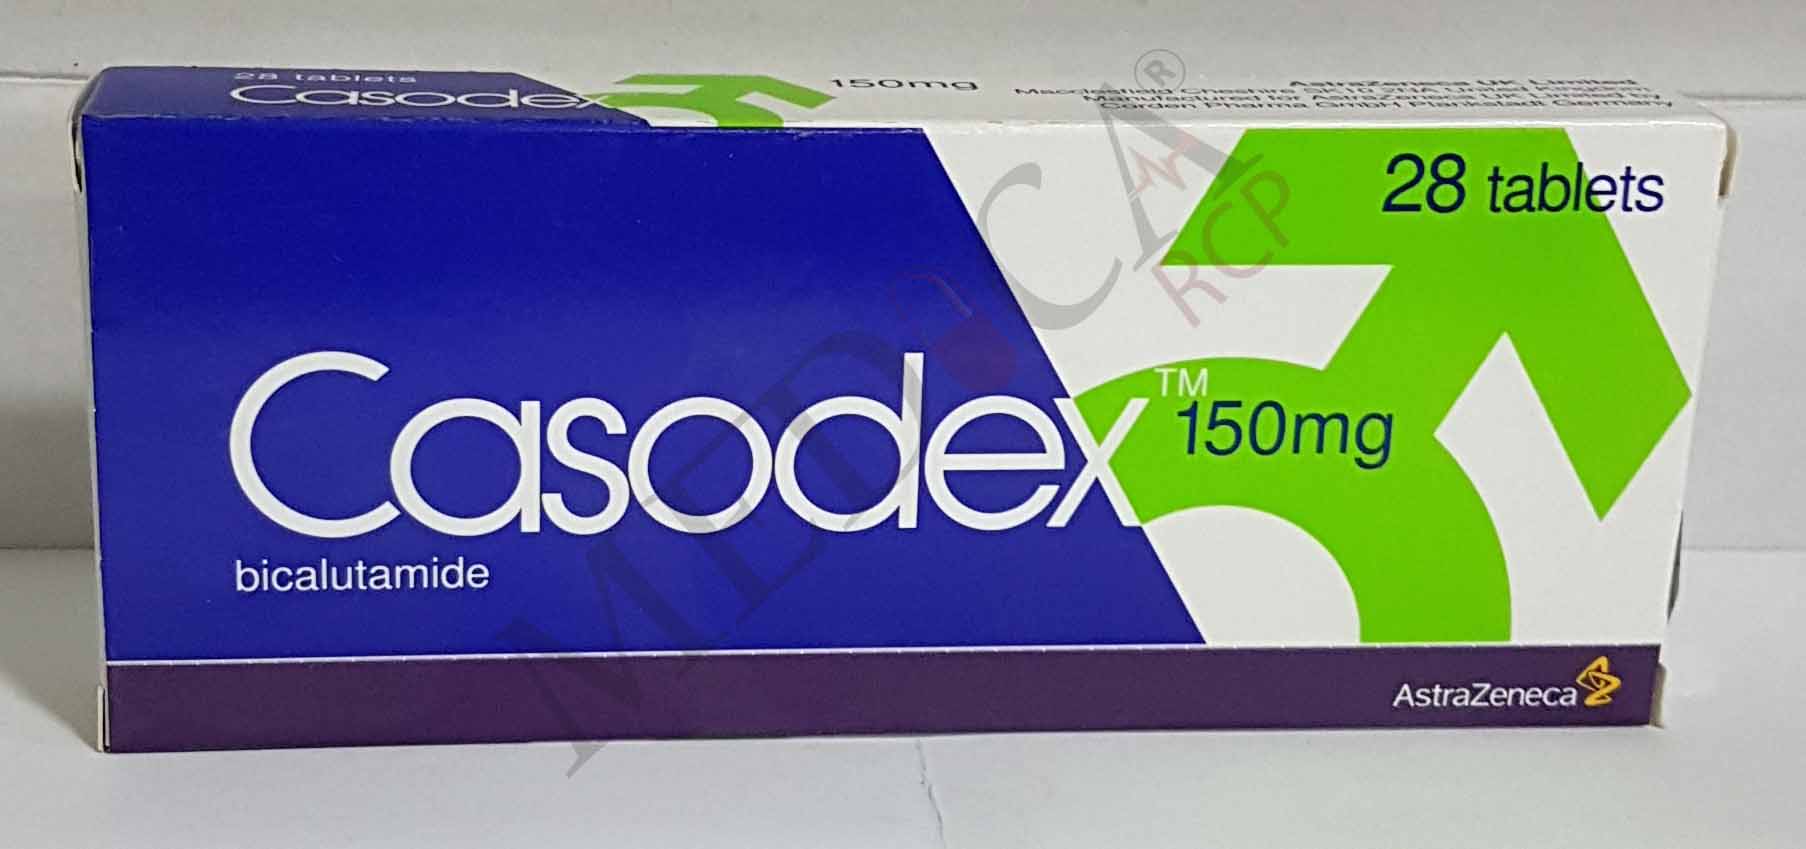 Casodex 150mg